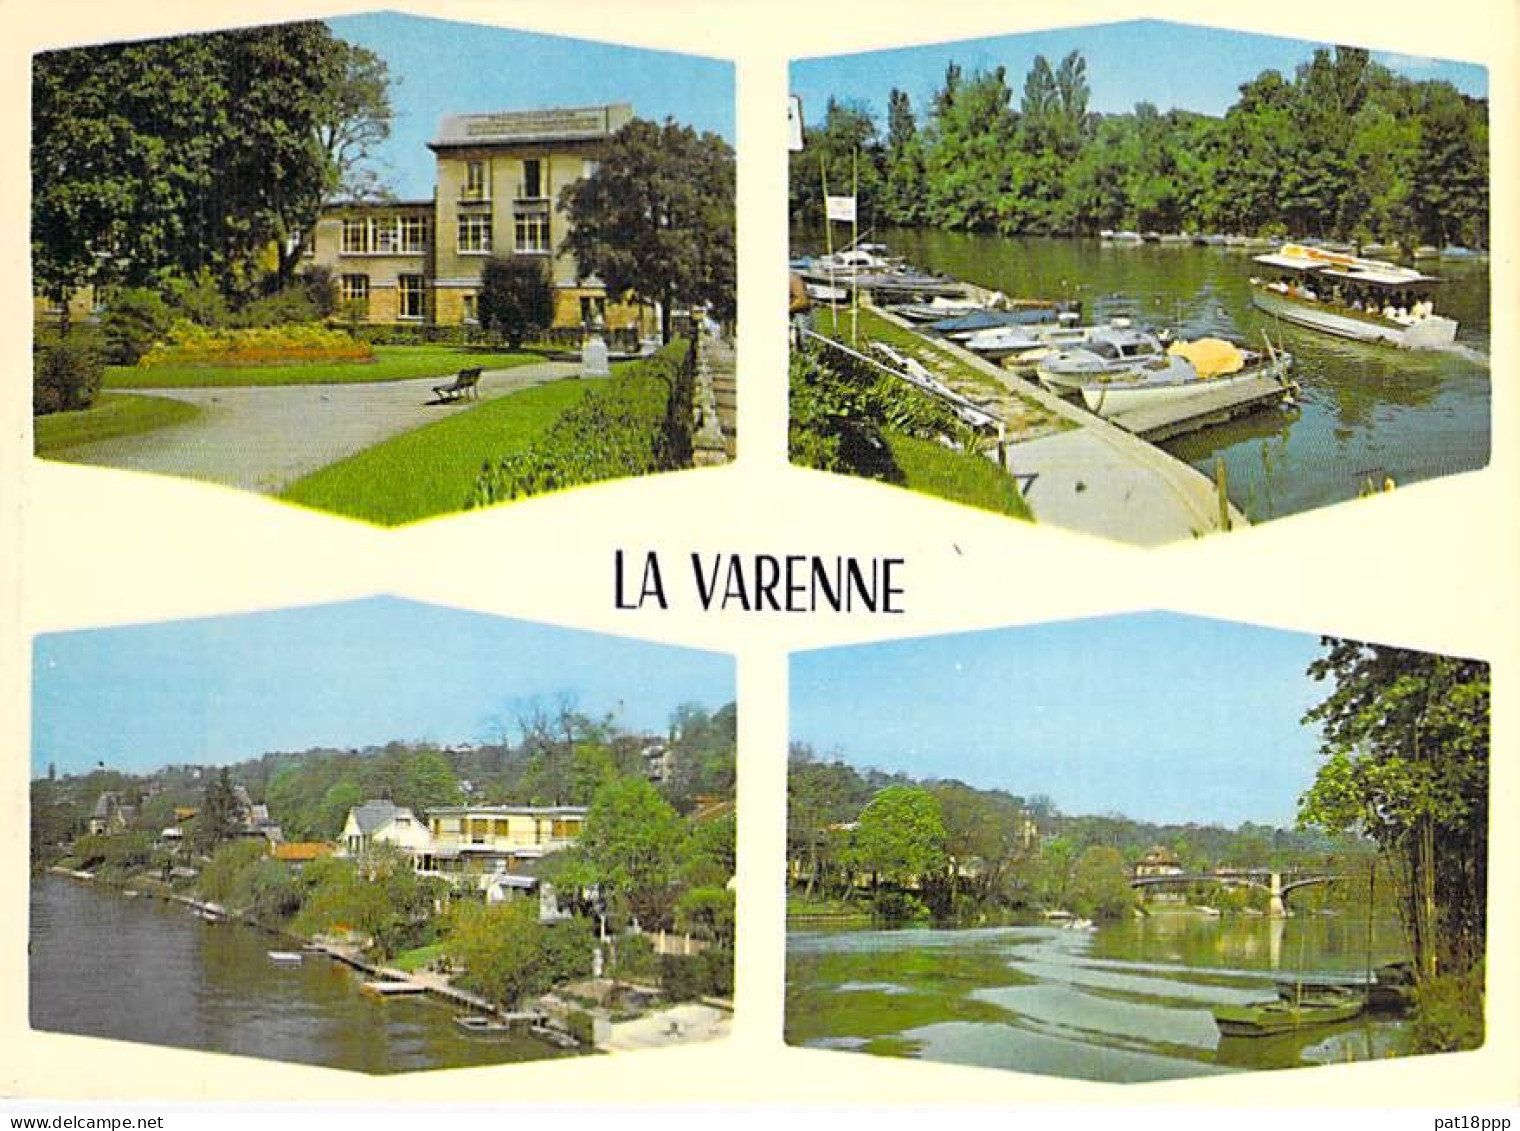 FRANCE Région PARISIENNE - Bon Lot de 50 CPSM-CPM Multivues Grand Format (1960-80) Prix de départ : 0.06 € par carte !!!